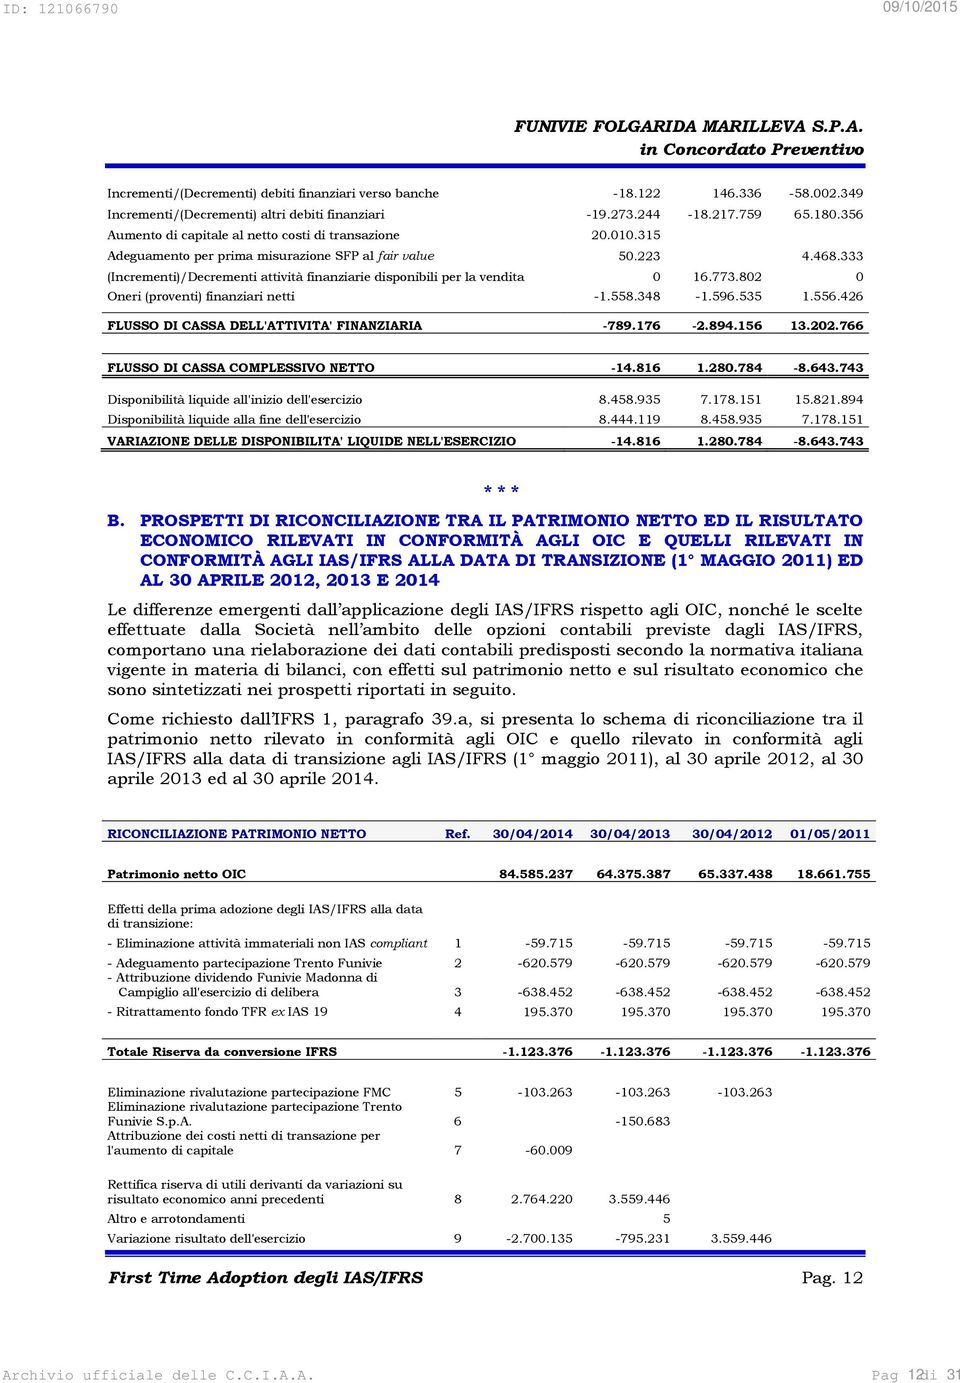 333 (Incrementi)/Decrementi attività finanziarie disponibili per la vendita 0 16.773.802 0 Oneri (proventi) finanziari netti -1.558.348-1.596.535 1.556.